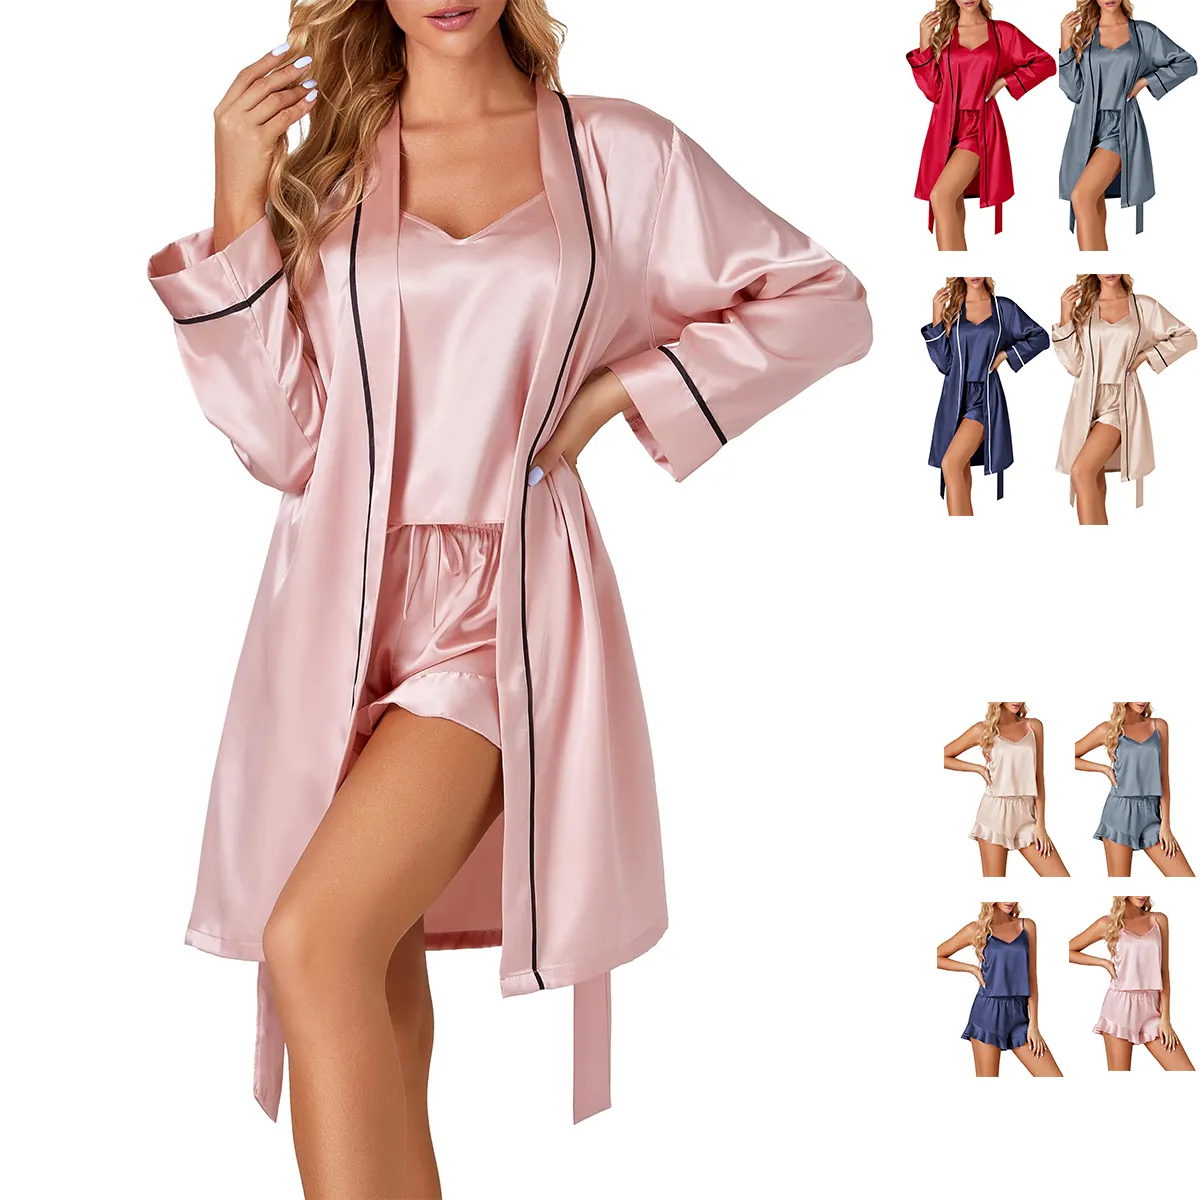 Toptan lüks ipek saten pijama 3 adet şort Modal Cami üst gelin bornoz parti Robe banyo lüks pijama kadınlar için Set